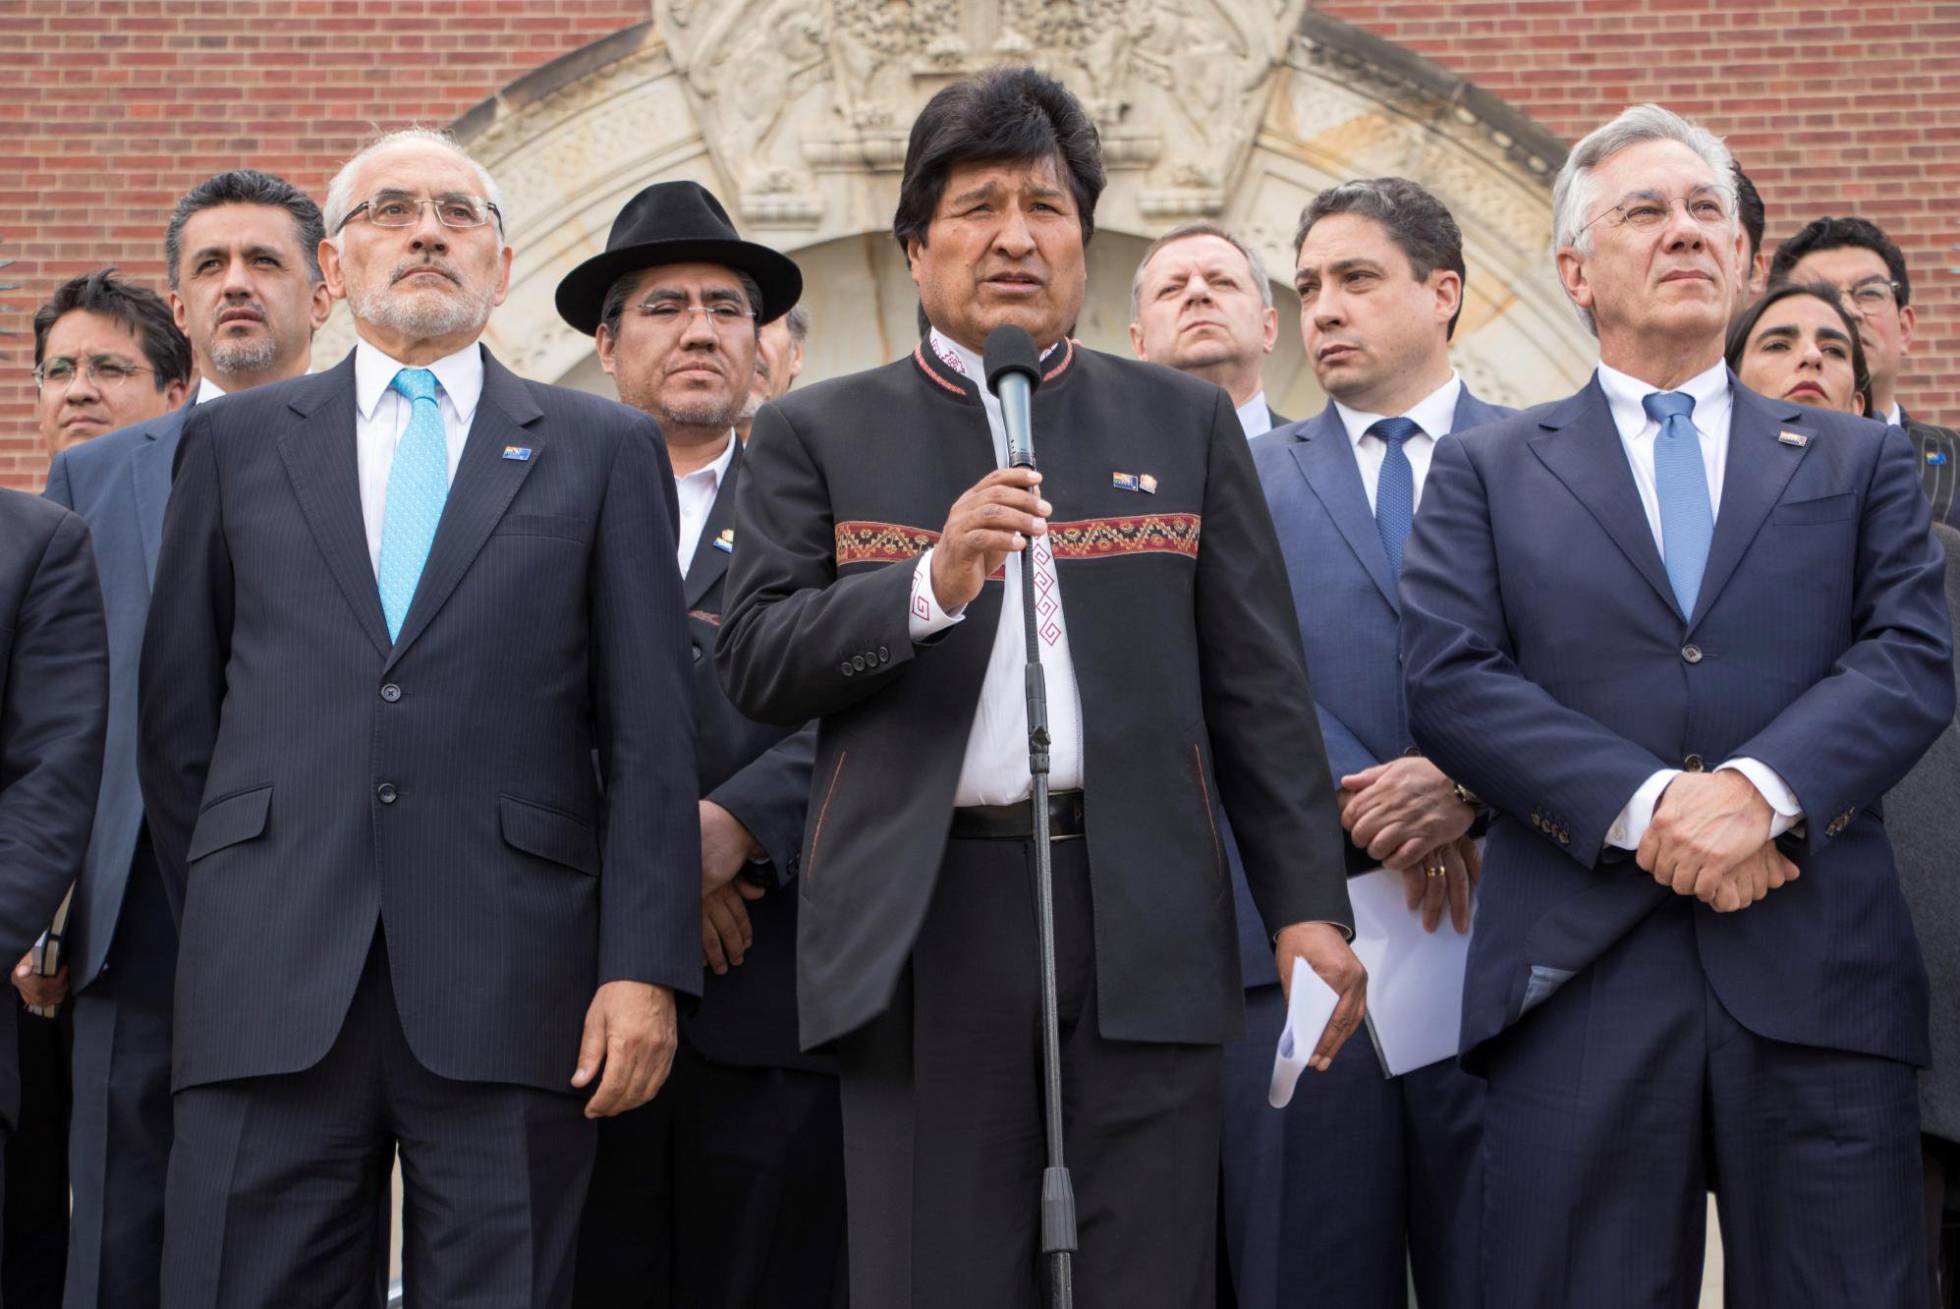 El expresidente boliviano Carlos Mesa se enfrentará a Evo Morales en las elecciones de 2019